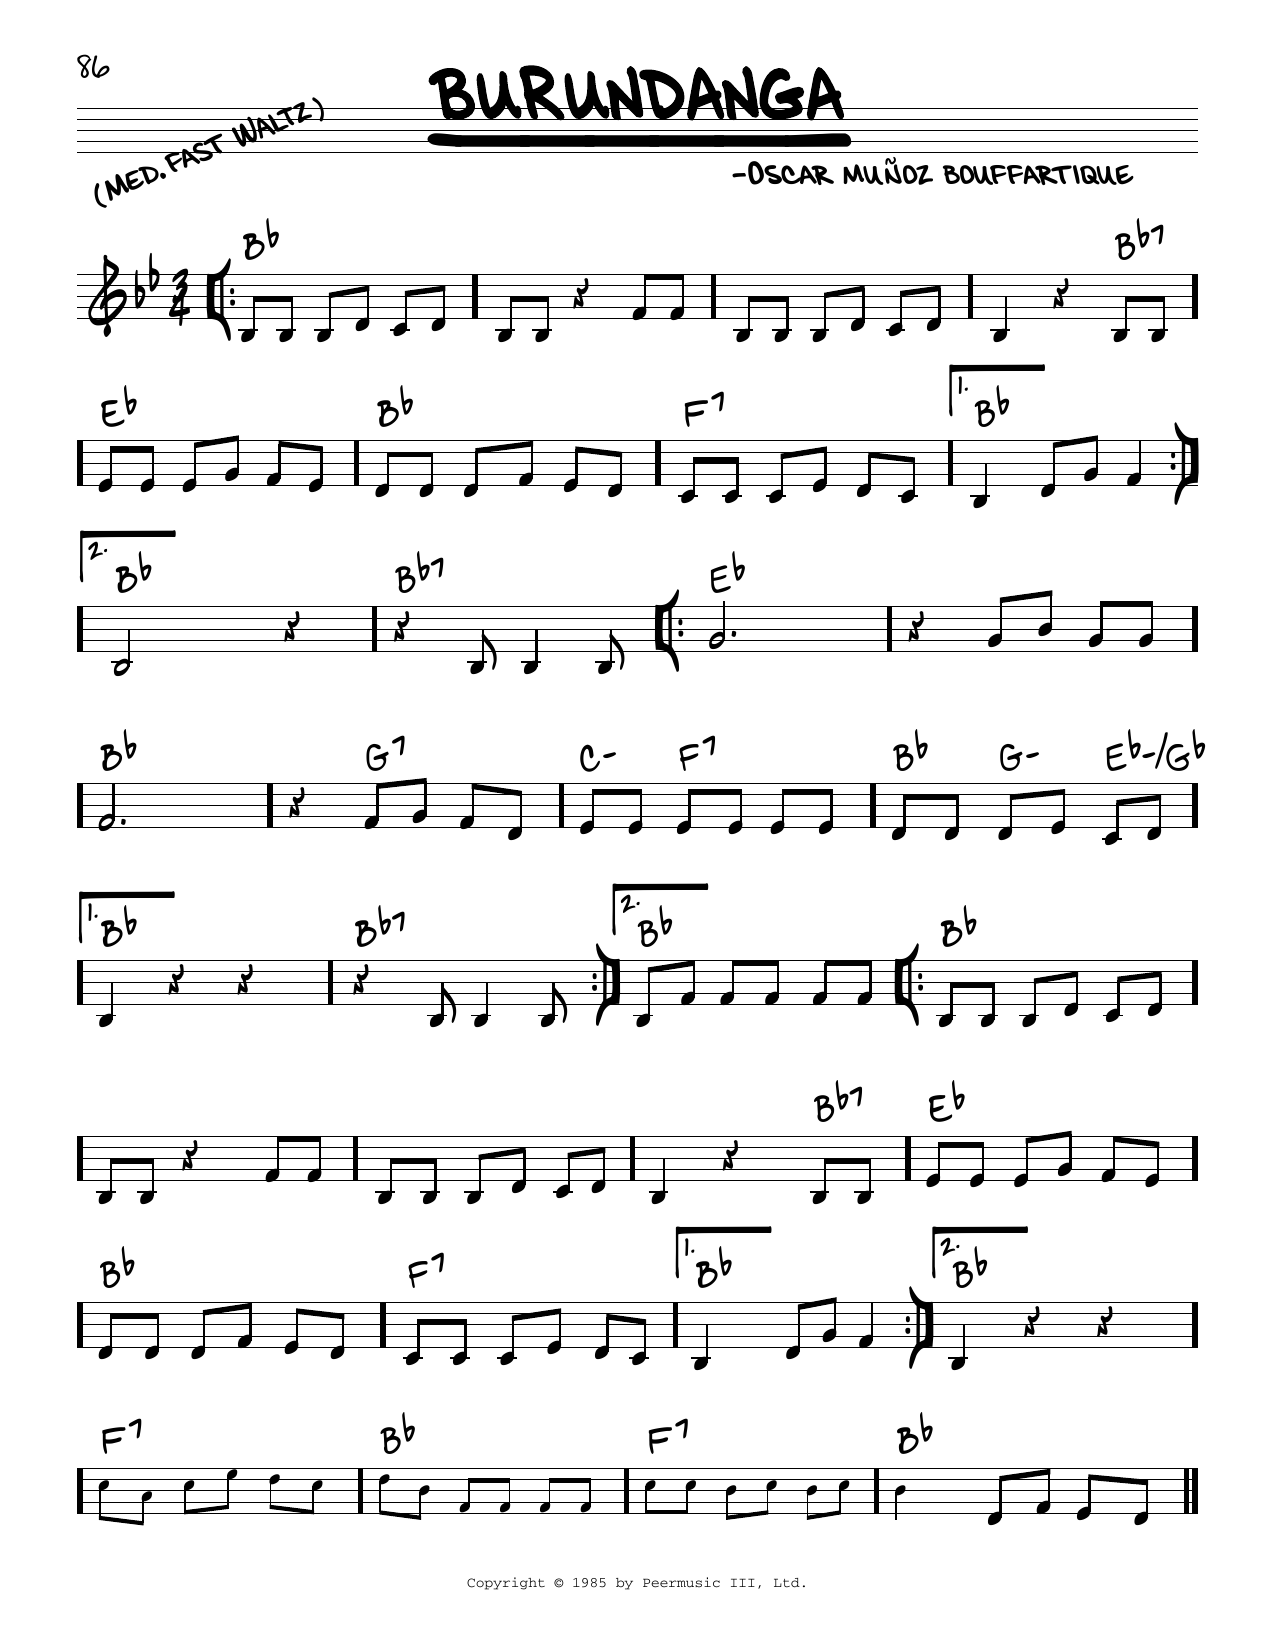 Oscar Munoz Bouffartique Burundanga Sheet Music Notes & Chords for Real Book – Melody & Chords - Download or Print PDF